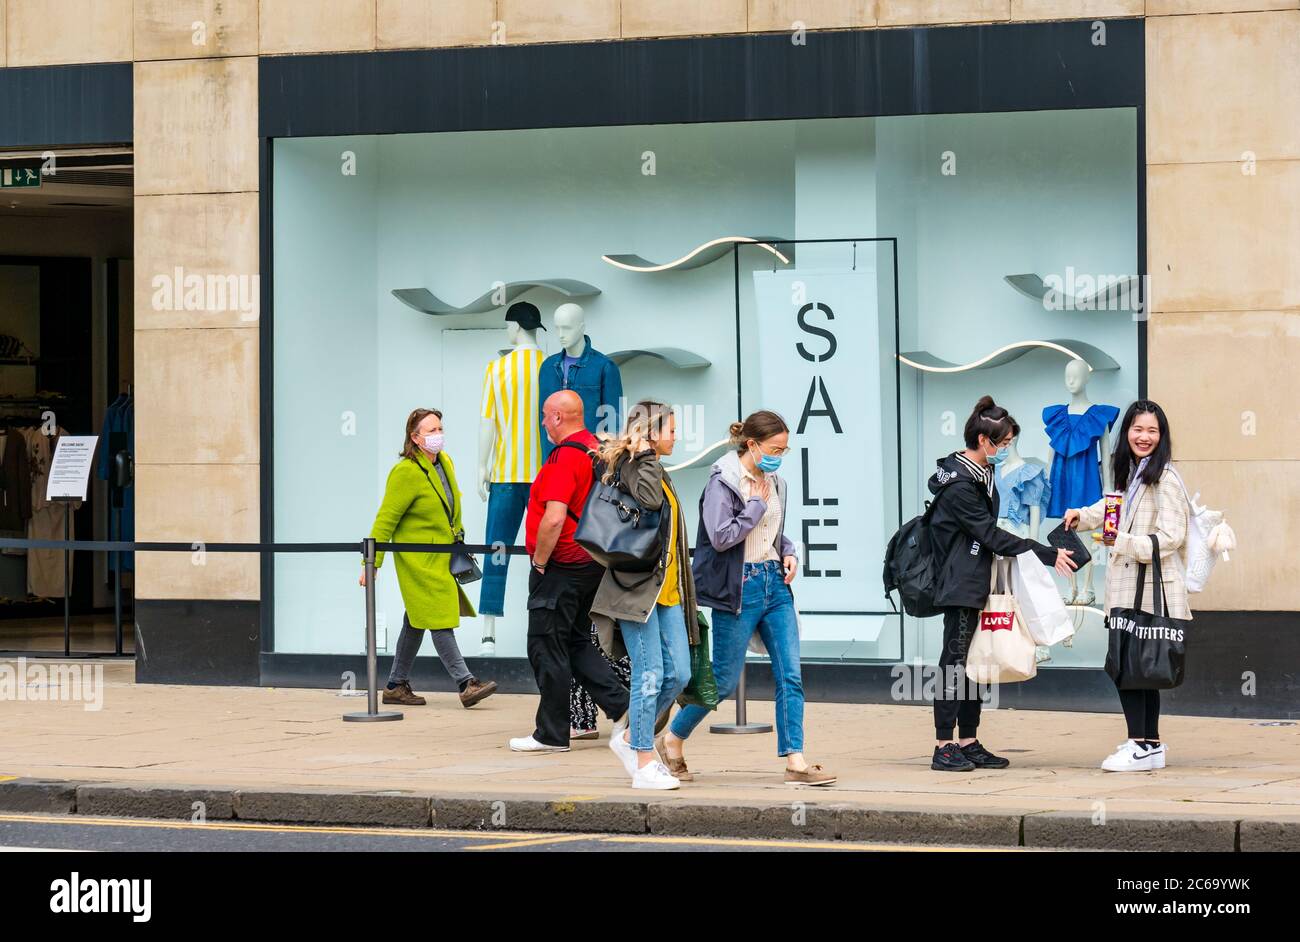 Edimburgo, Scozia, Regno Unito, 8 luglio 2020. Le maschere facciali sono la norma su Princes Street con sempre più persone che le indossano, soprattutto per andare nei negozi, anche se non diventano obbligatori nei negozi in Scozia fino a venerdì. Giovani donne che indossano maschere al di fuori del negozio di abbigliamento Zara Foto Stock